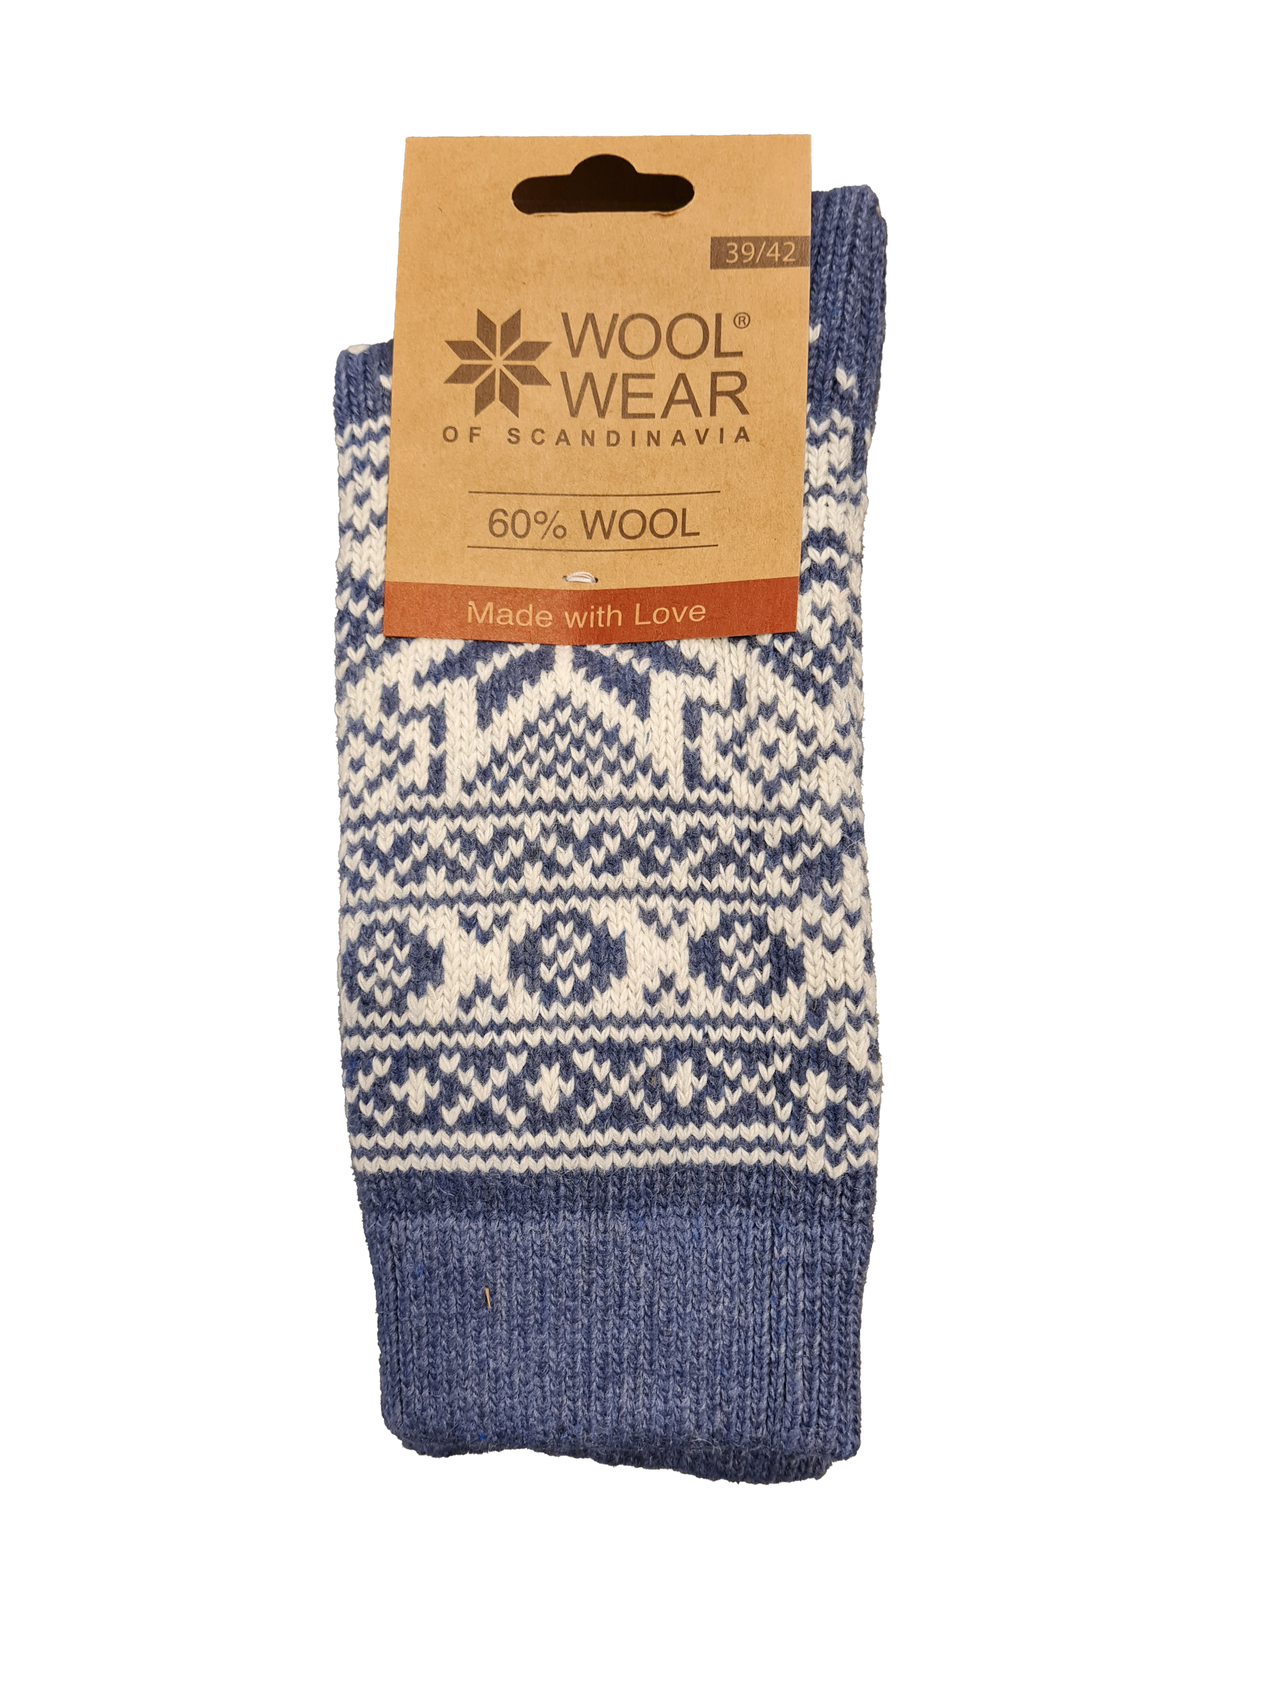 Se Wool Wear Uldsokker 60% (Lys Blå, 39/42) hos Specialbutikken